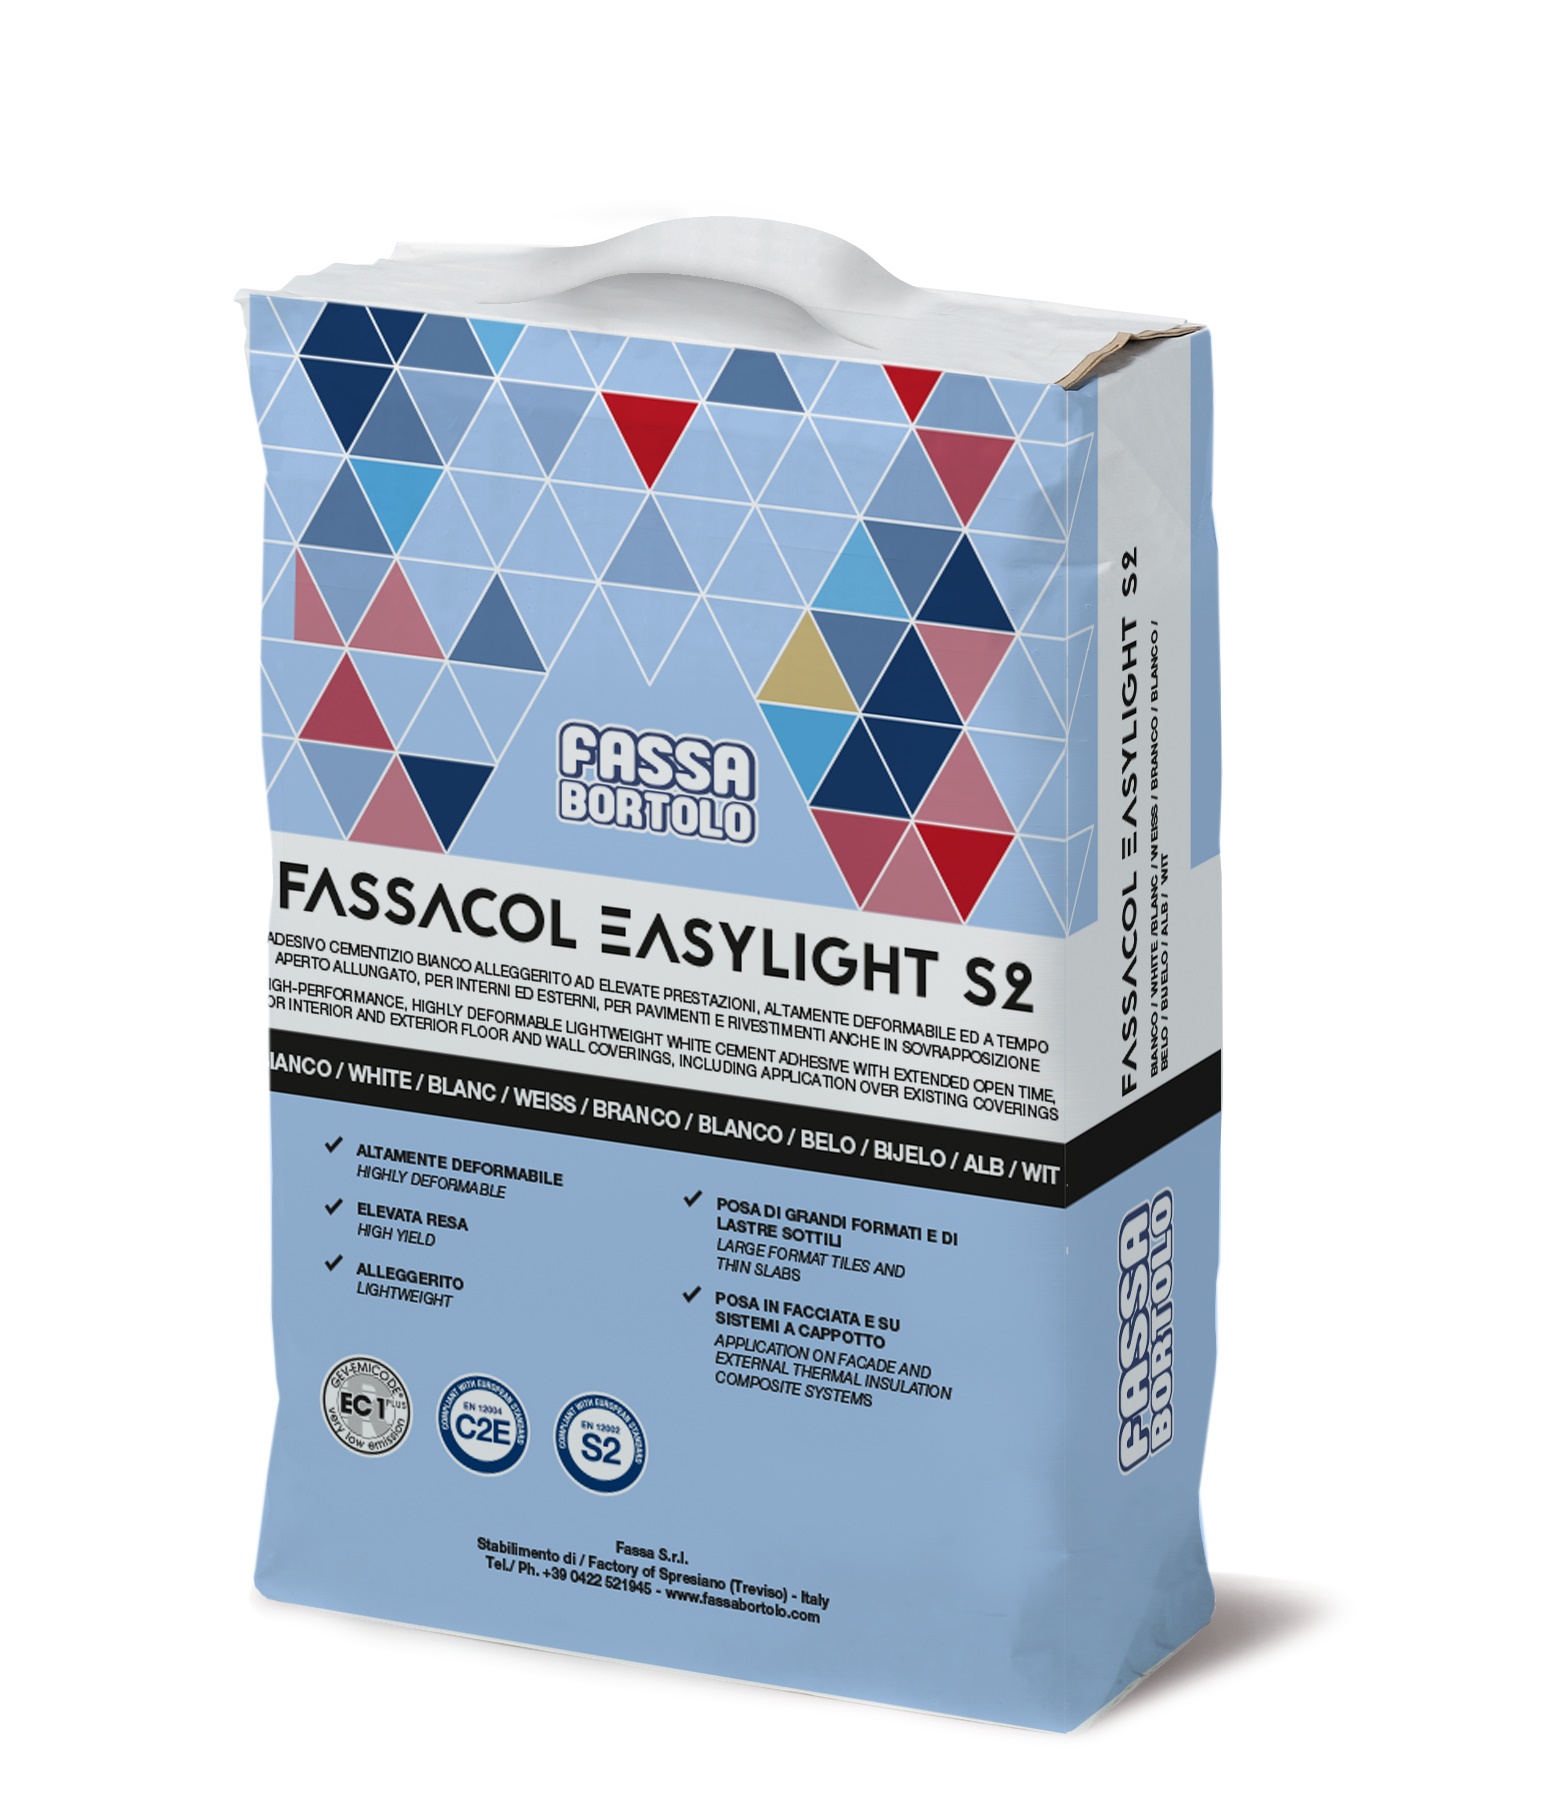 FASSACOL_EASYLIGHT_S2